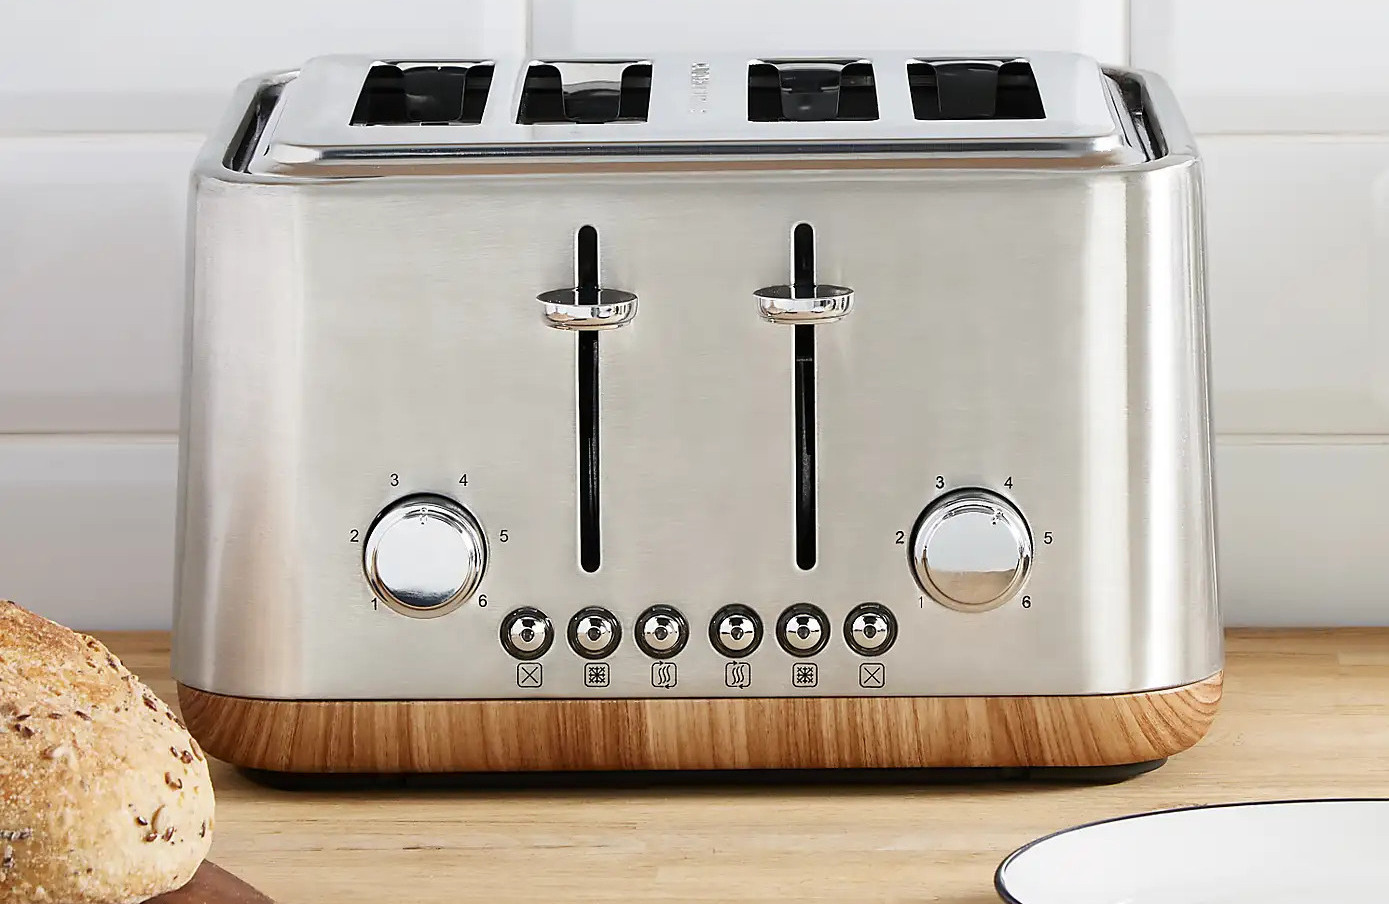 Mueller UltraToast Full Stainless Steel Toaster 4 Slice Long Extra